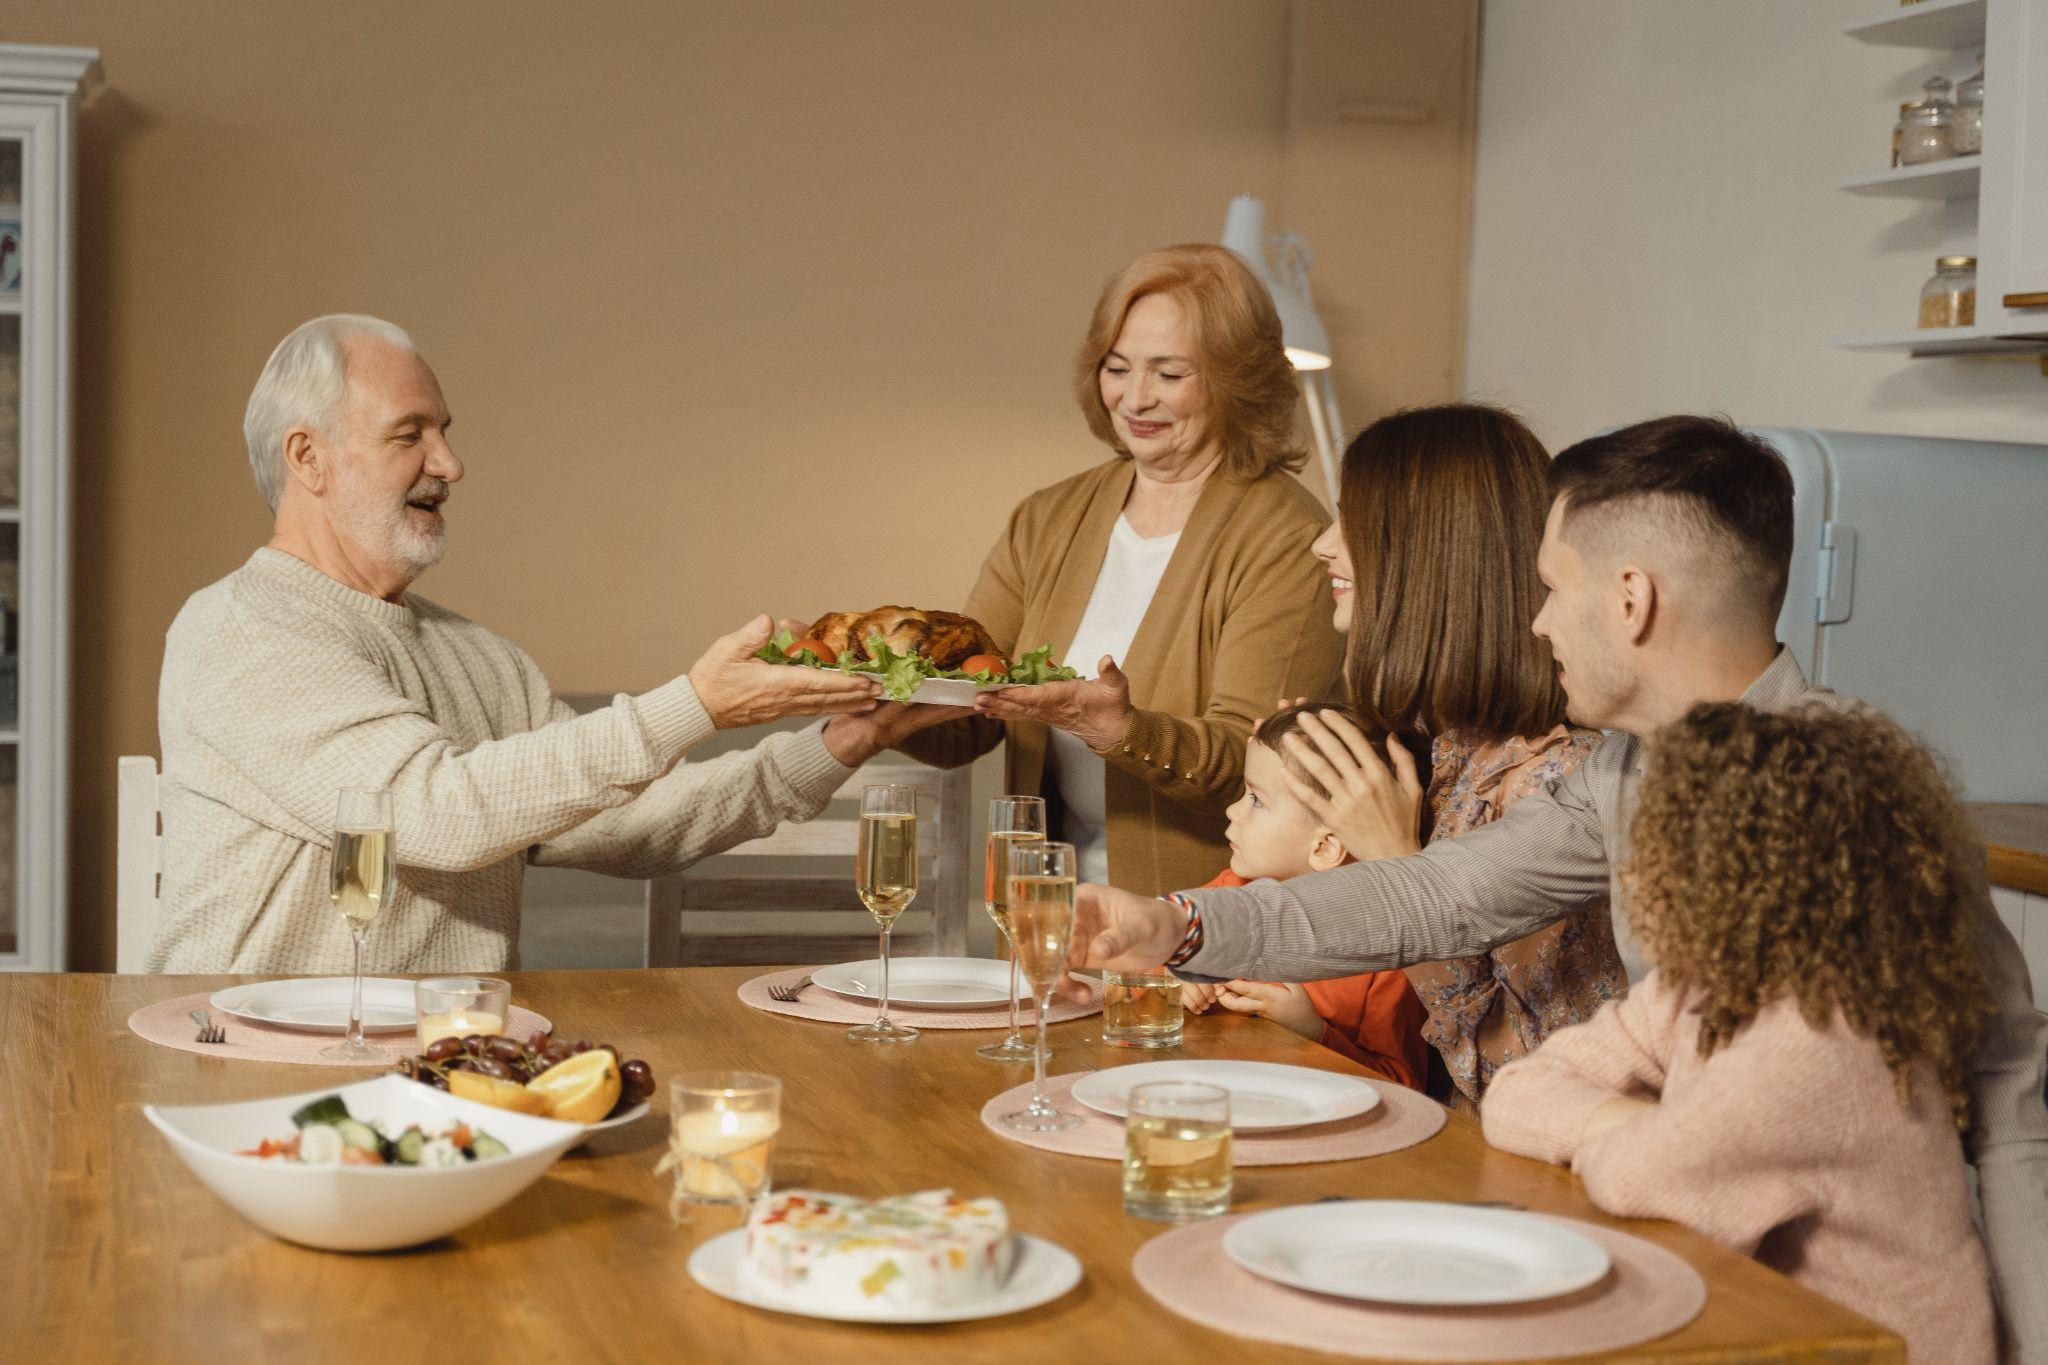 Family during Thanksgiving 2022 dinner